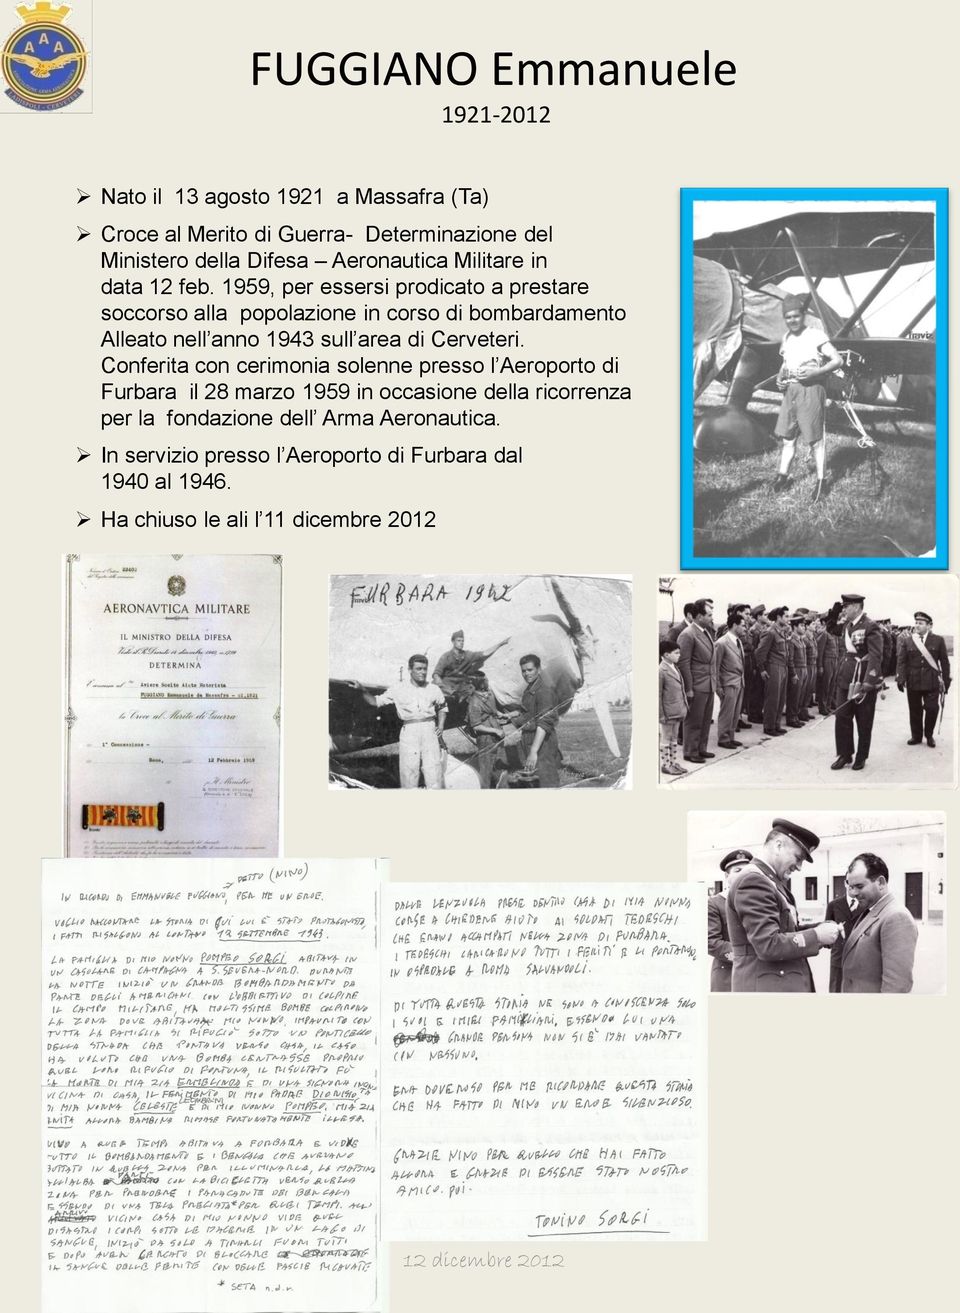 1959, per essersi prodicato a prestare soccorso alla popolazione in corso di bombardamento Alleato nell anno 1943 sull area di Cerveteri.